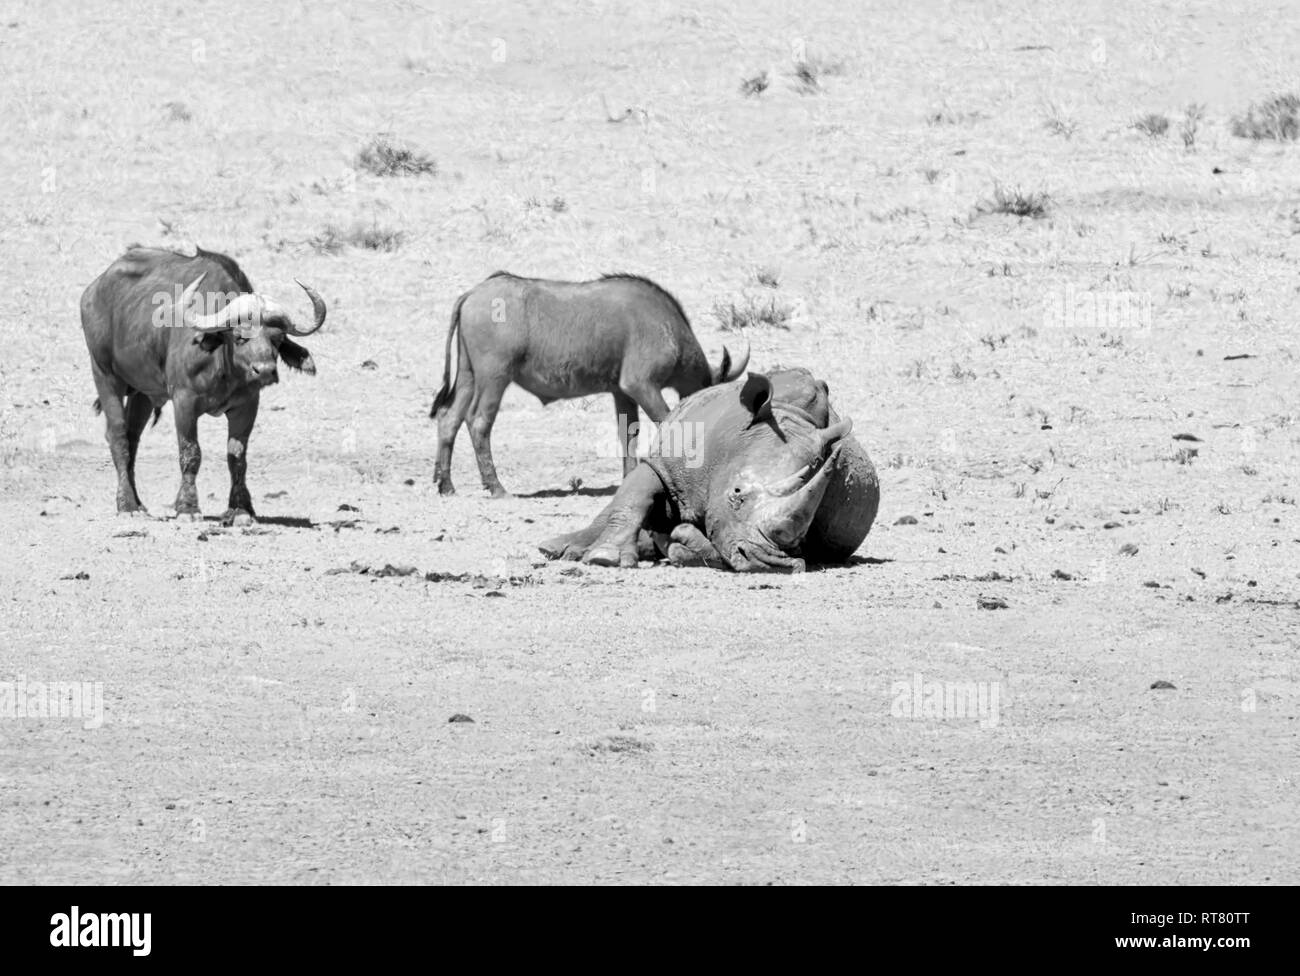 White Rhino et Buffalo dans le sud de la savane africaine Banque D'Images